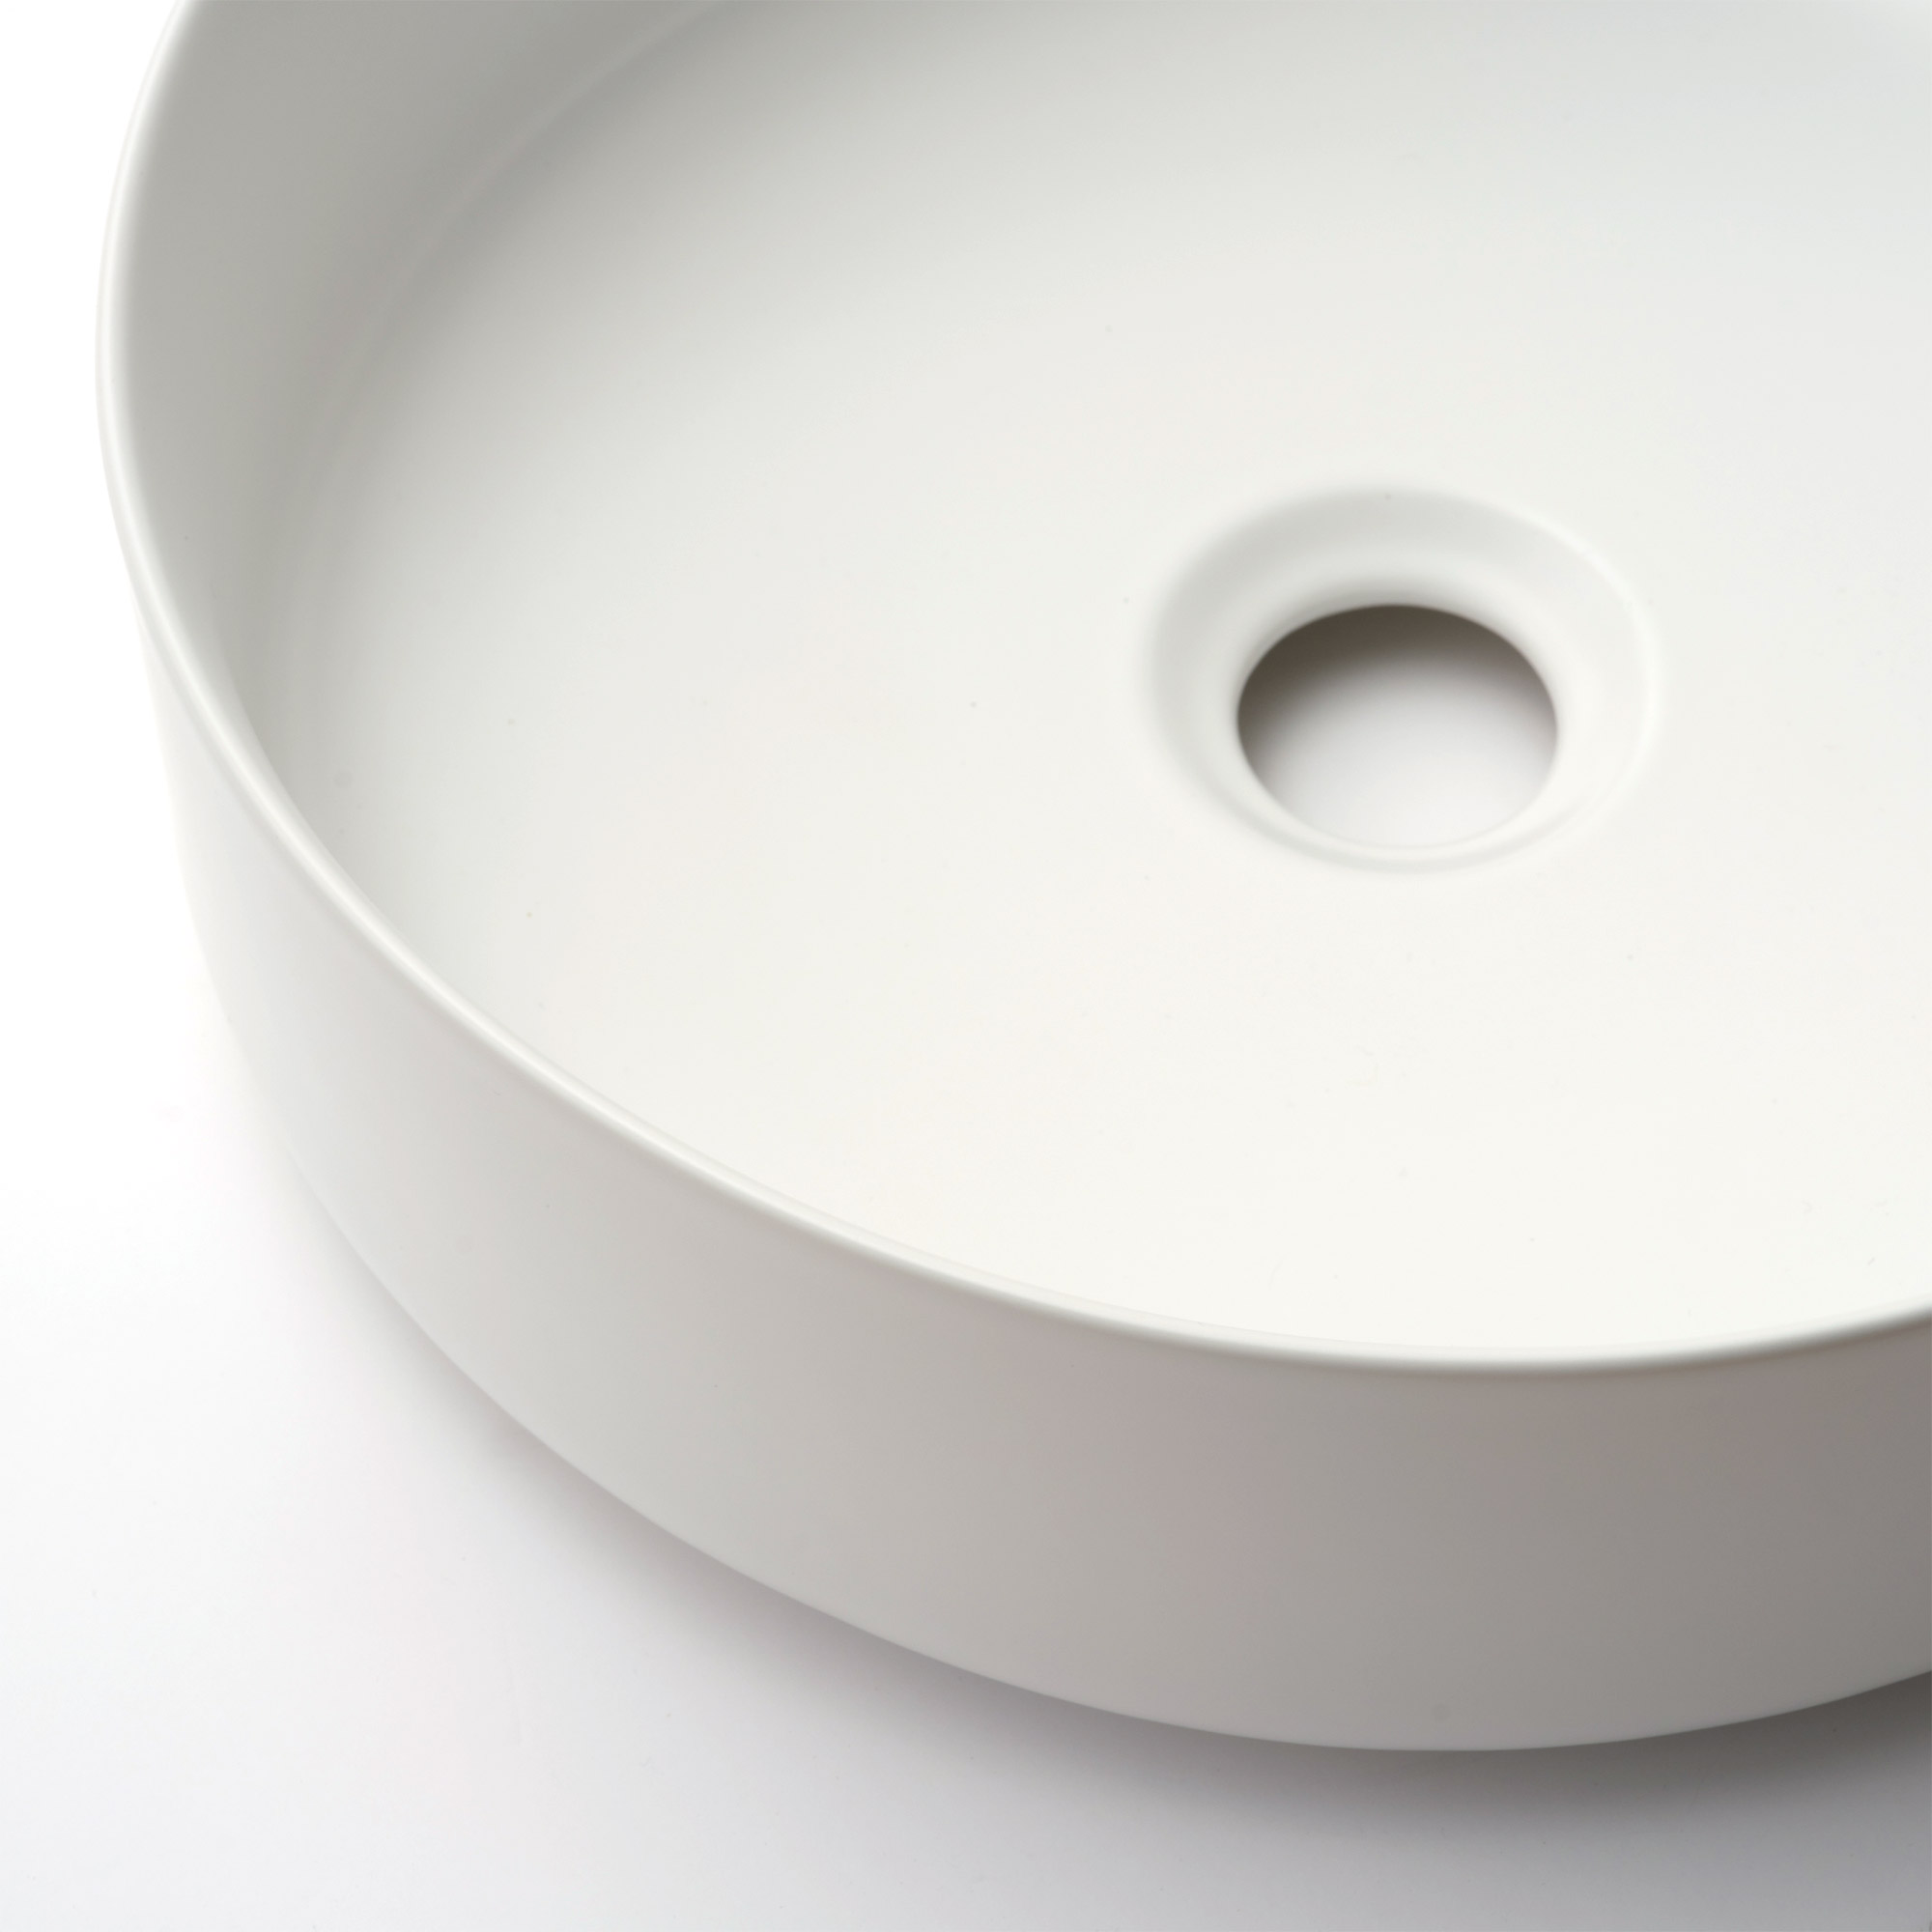 陶器の手洗い器 丸350 マットホワイト KB-PR012-03-G141 すっきりと薄い縁が、洗練された印象